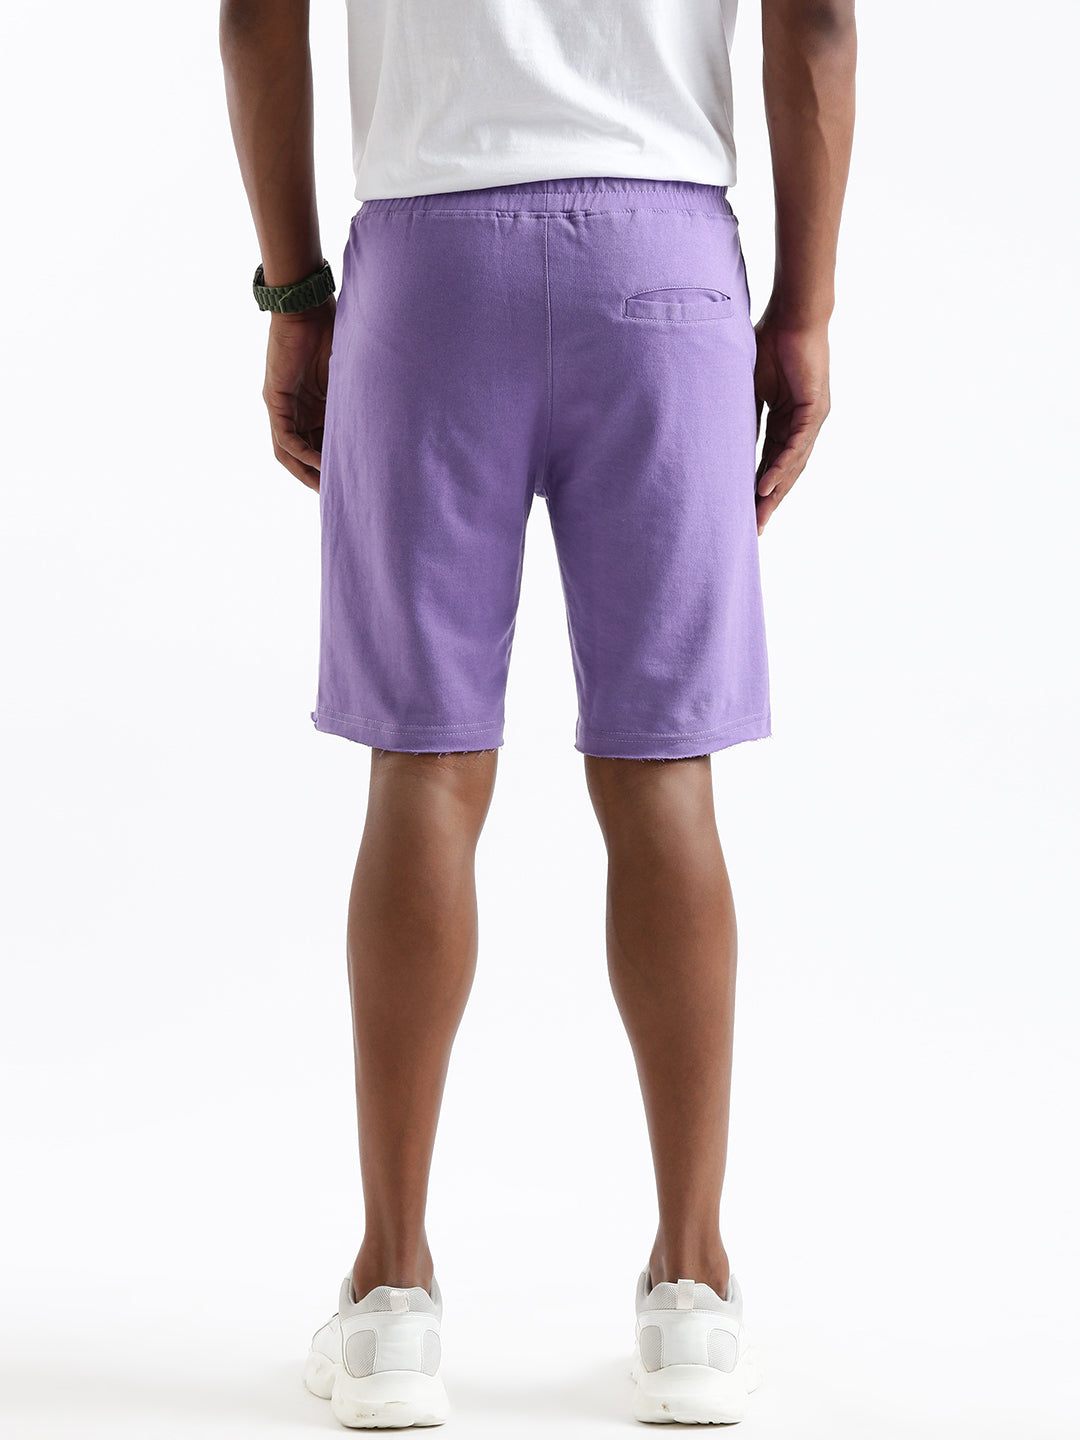 Wrogn Enough Purple Shorts